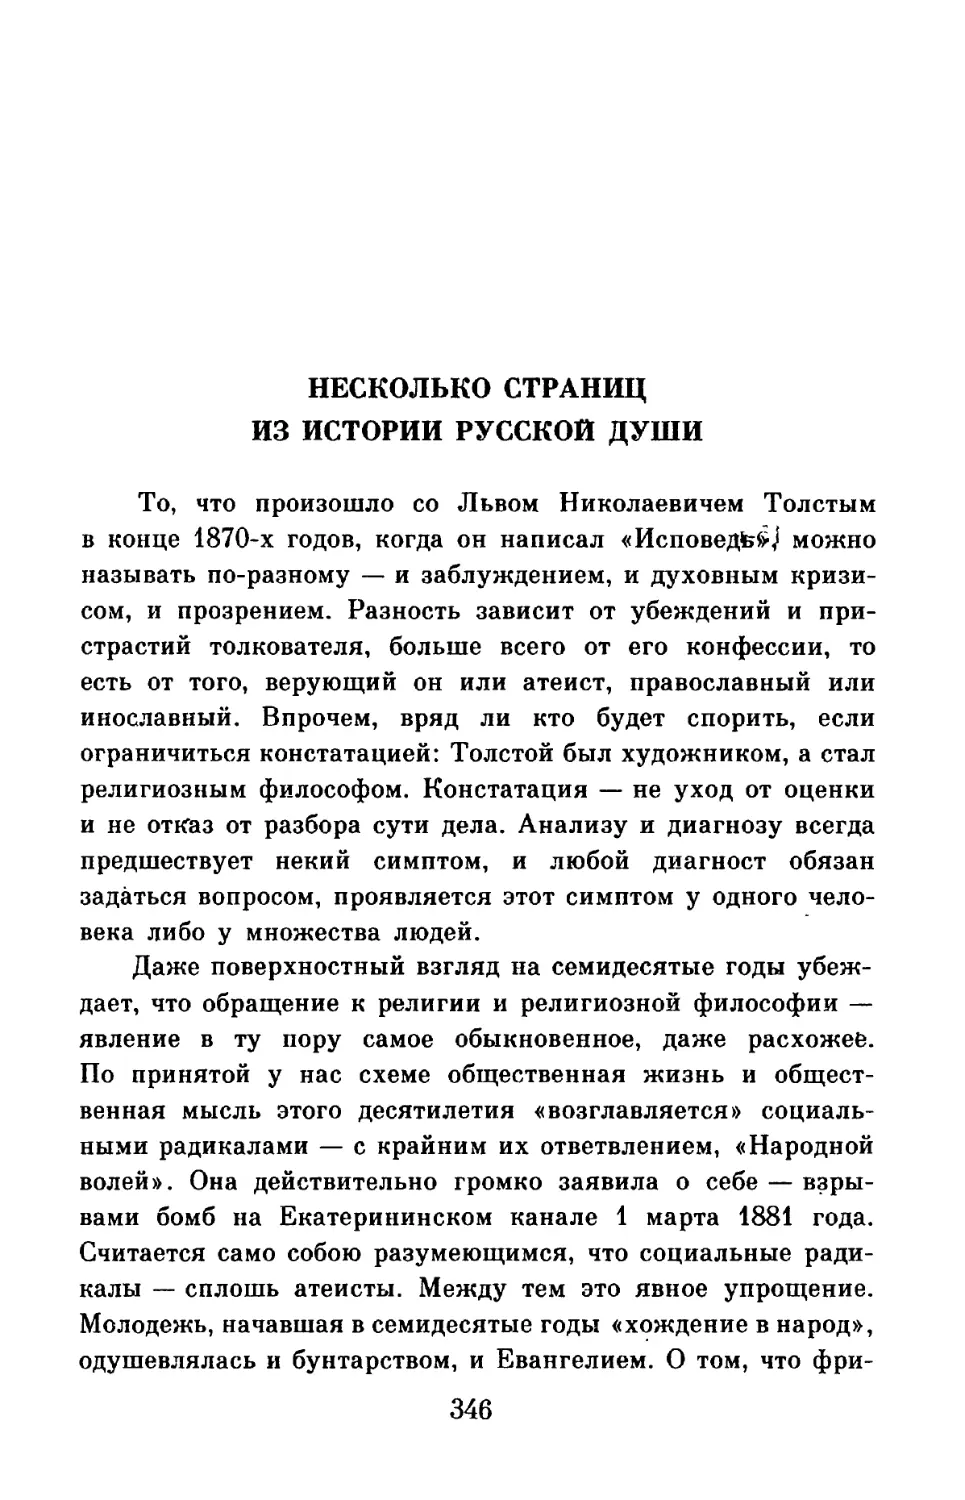 А. Панченко. Несколько страниц из истории русской души